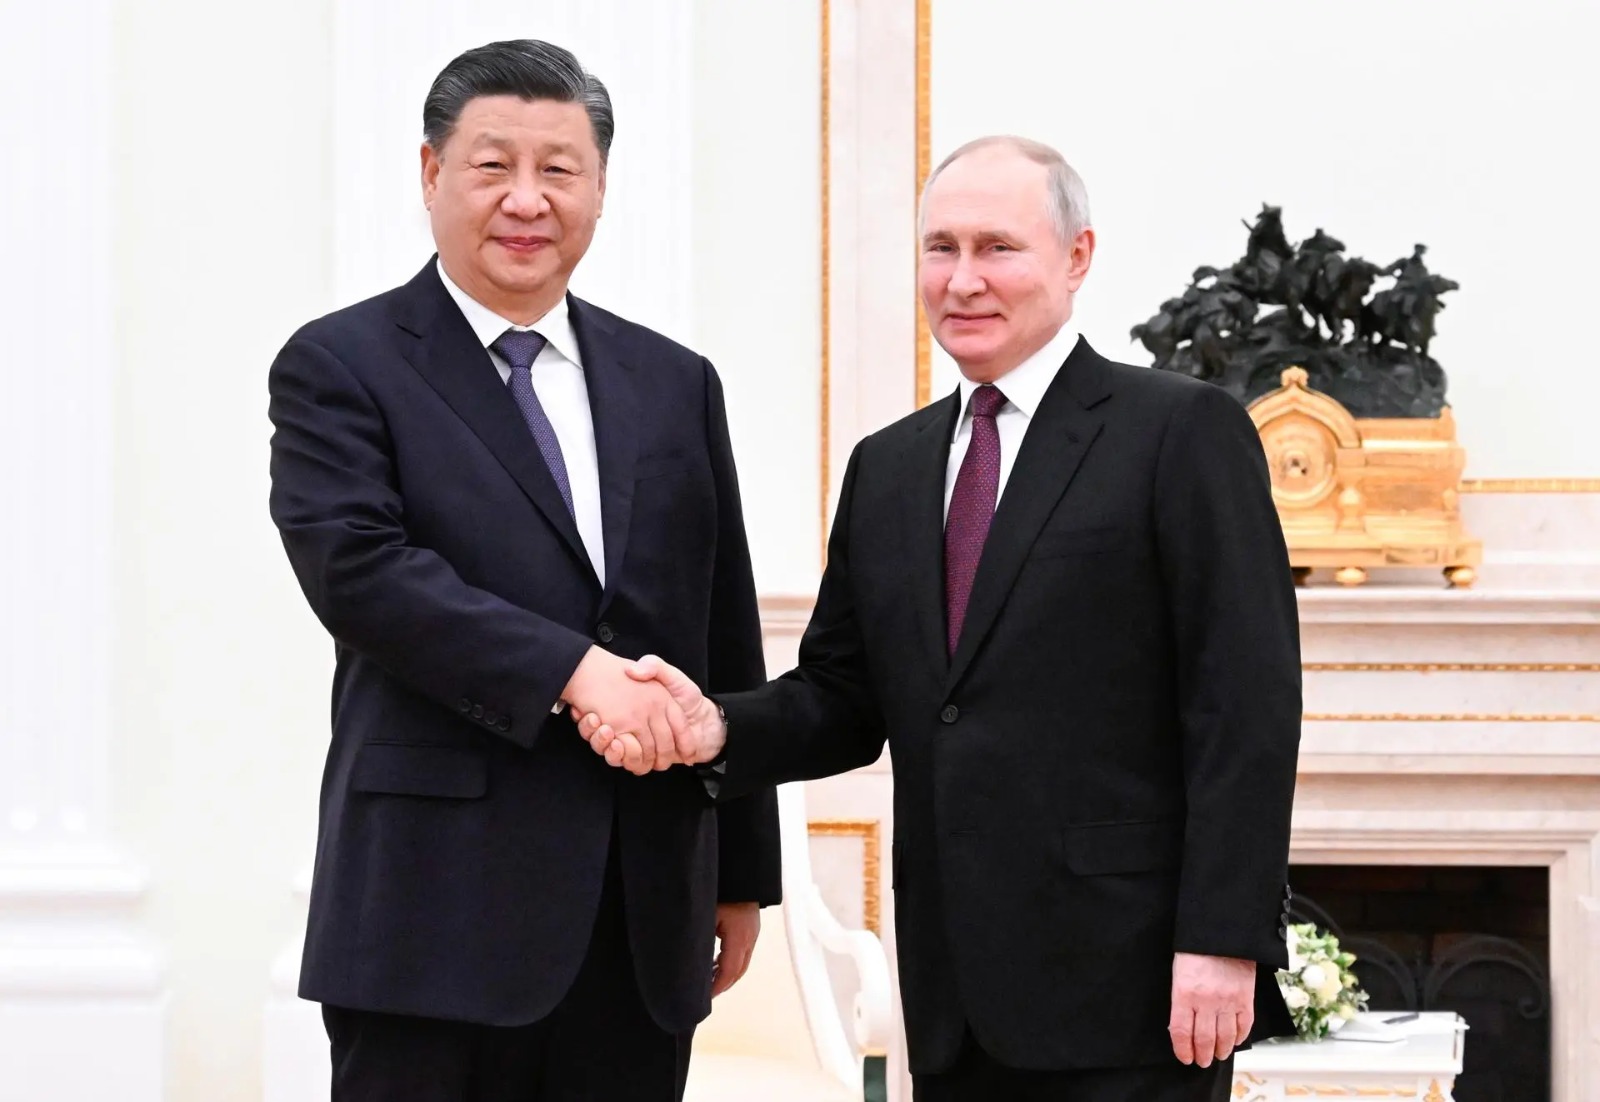 Putin y Xi inician negociaciones en el Kremlin